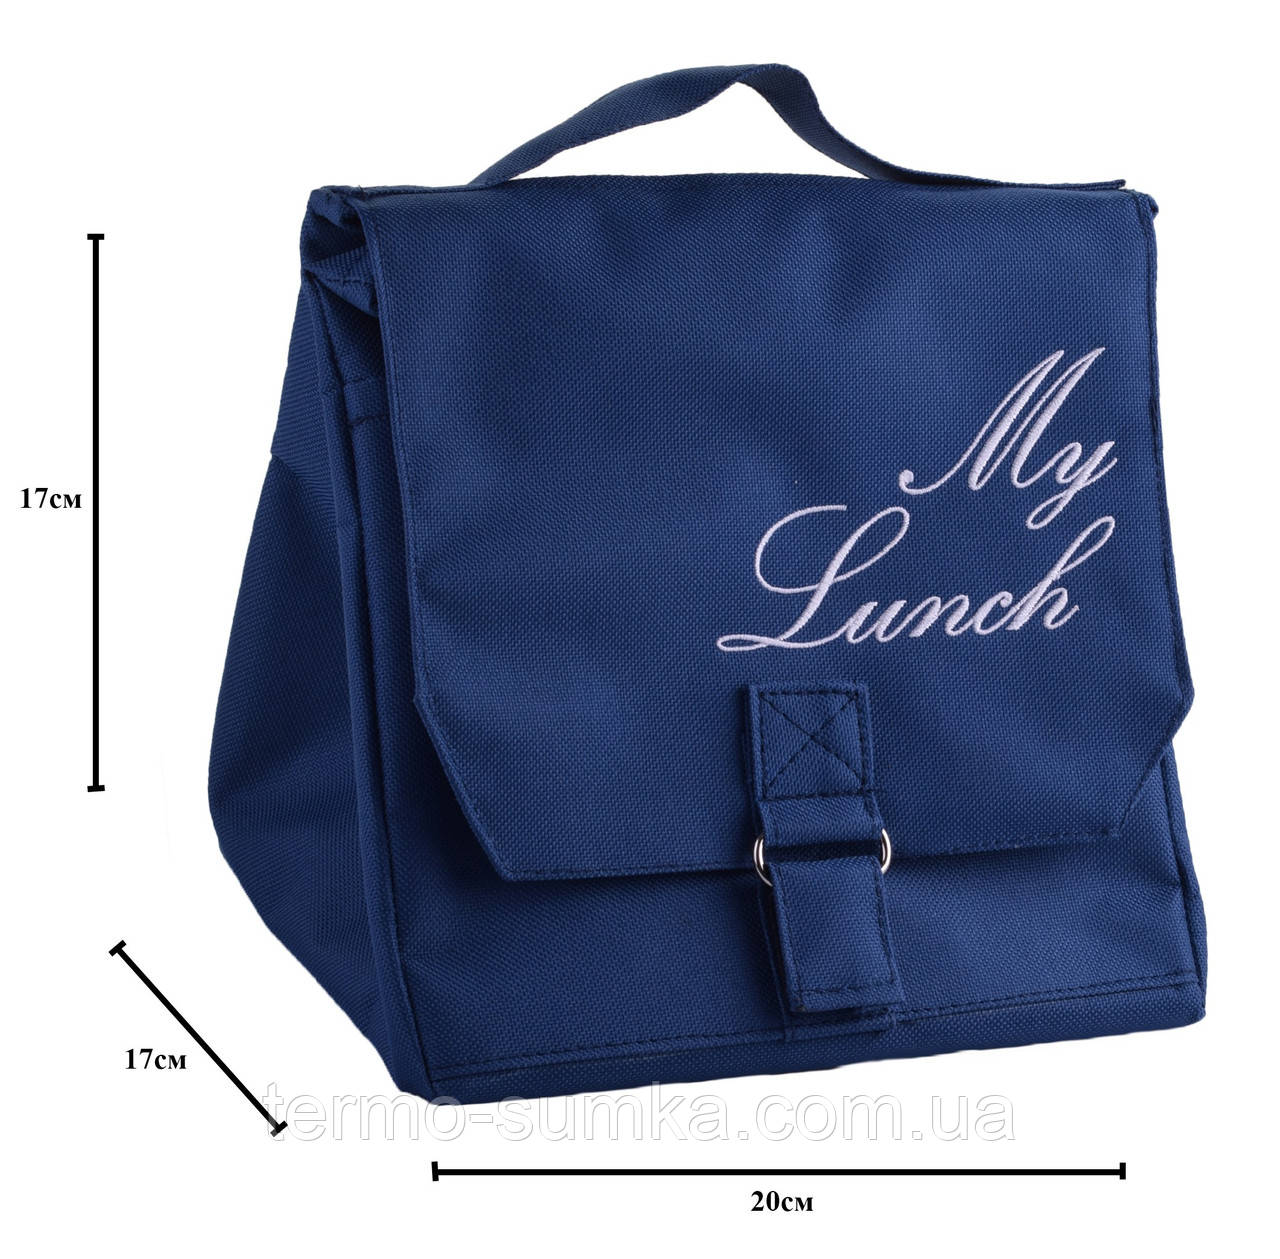 Термосумка. Сумка для із собою Lunch bag з вишивкою My lunch. Темно-синій